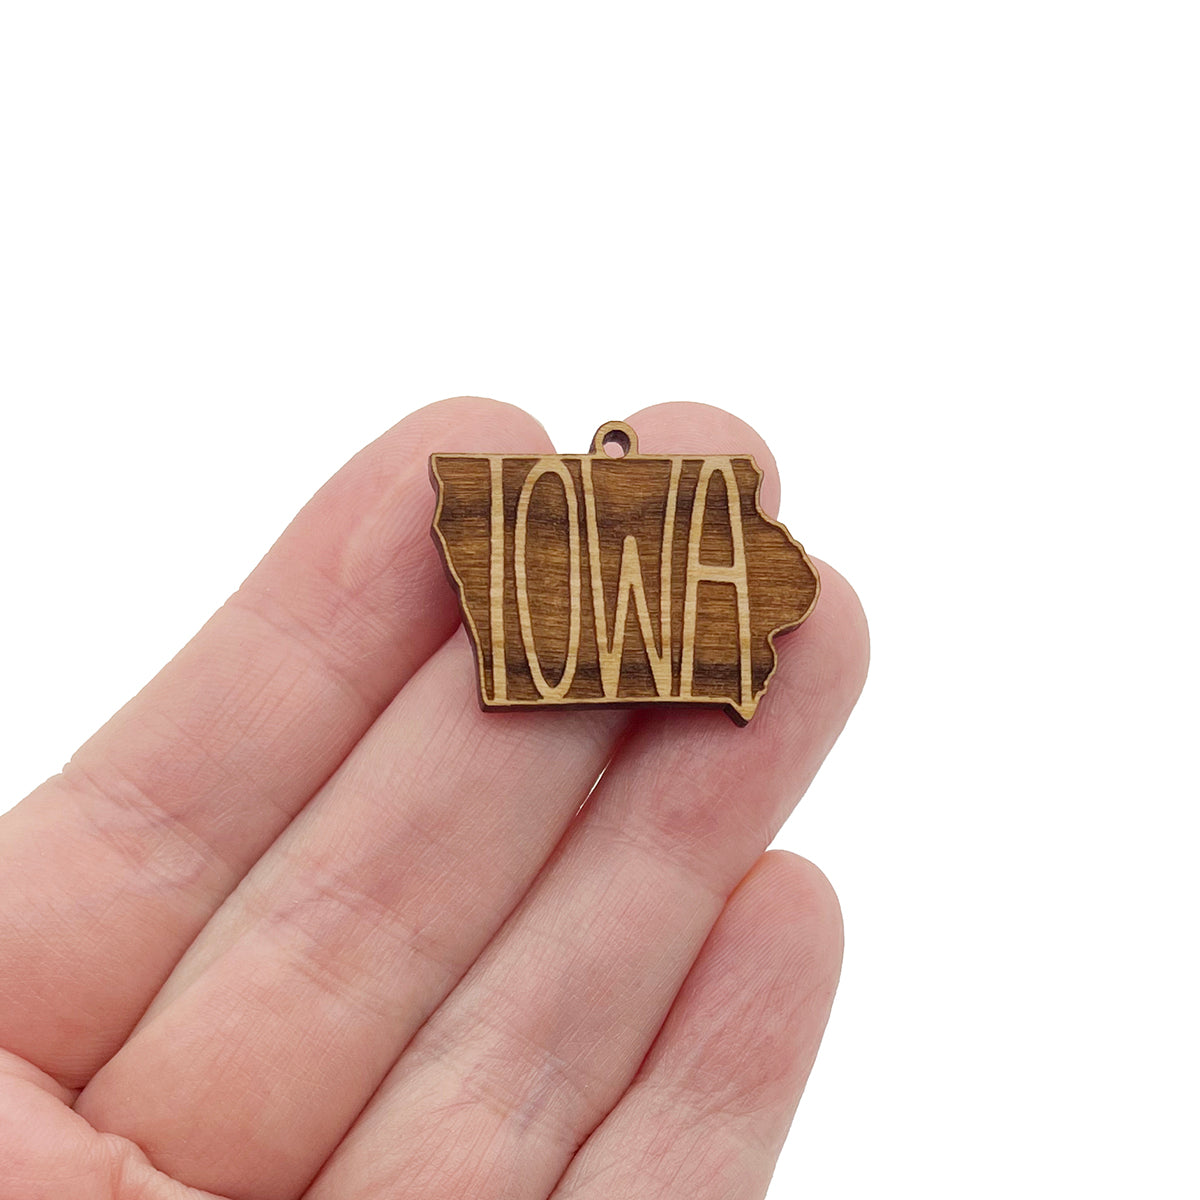 Iowa Engraved Wood Jewelry Charm Blanks